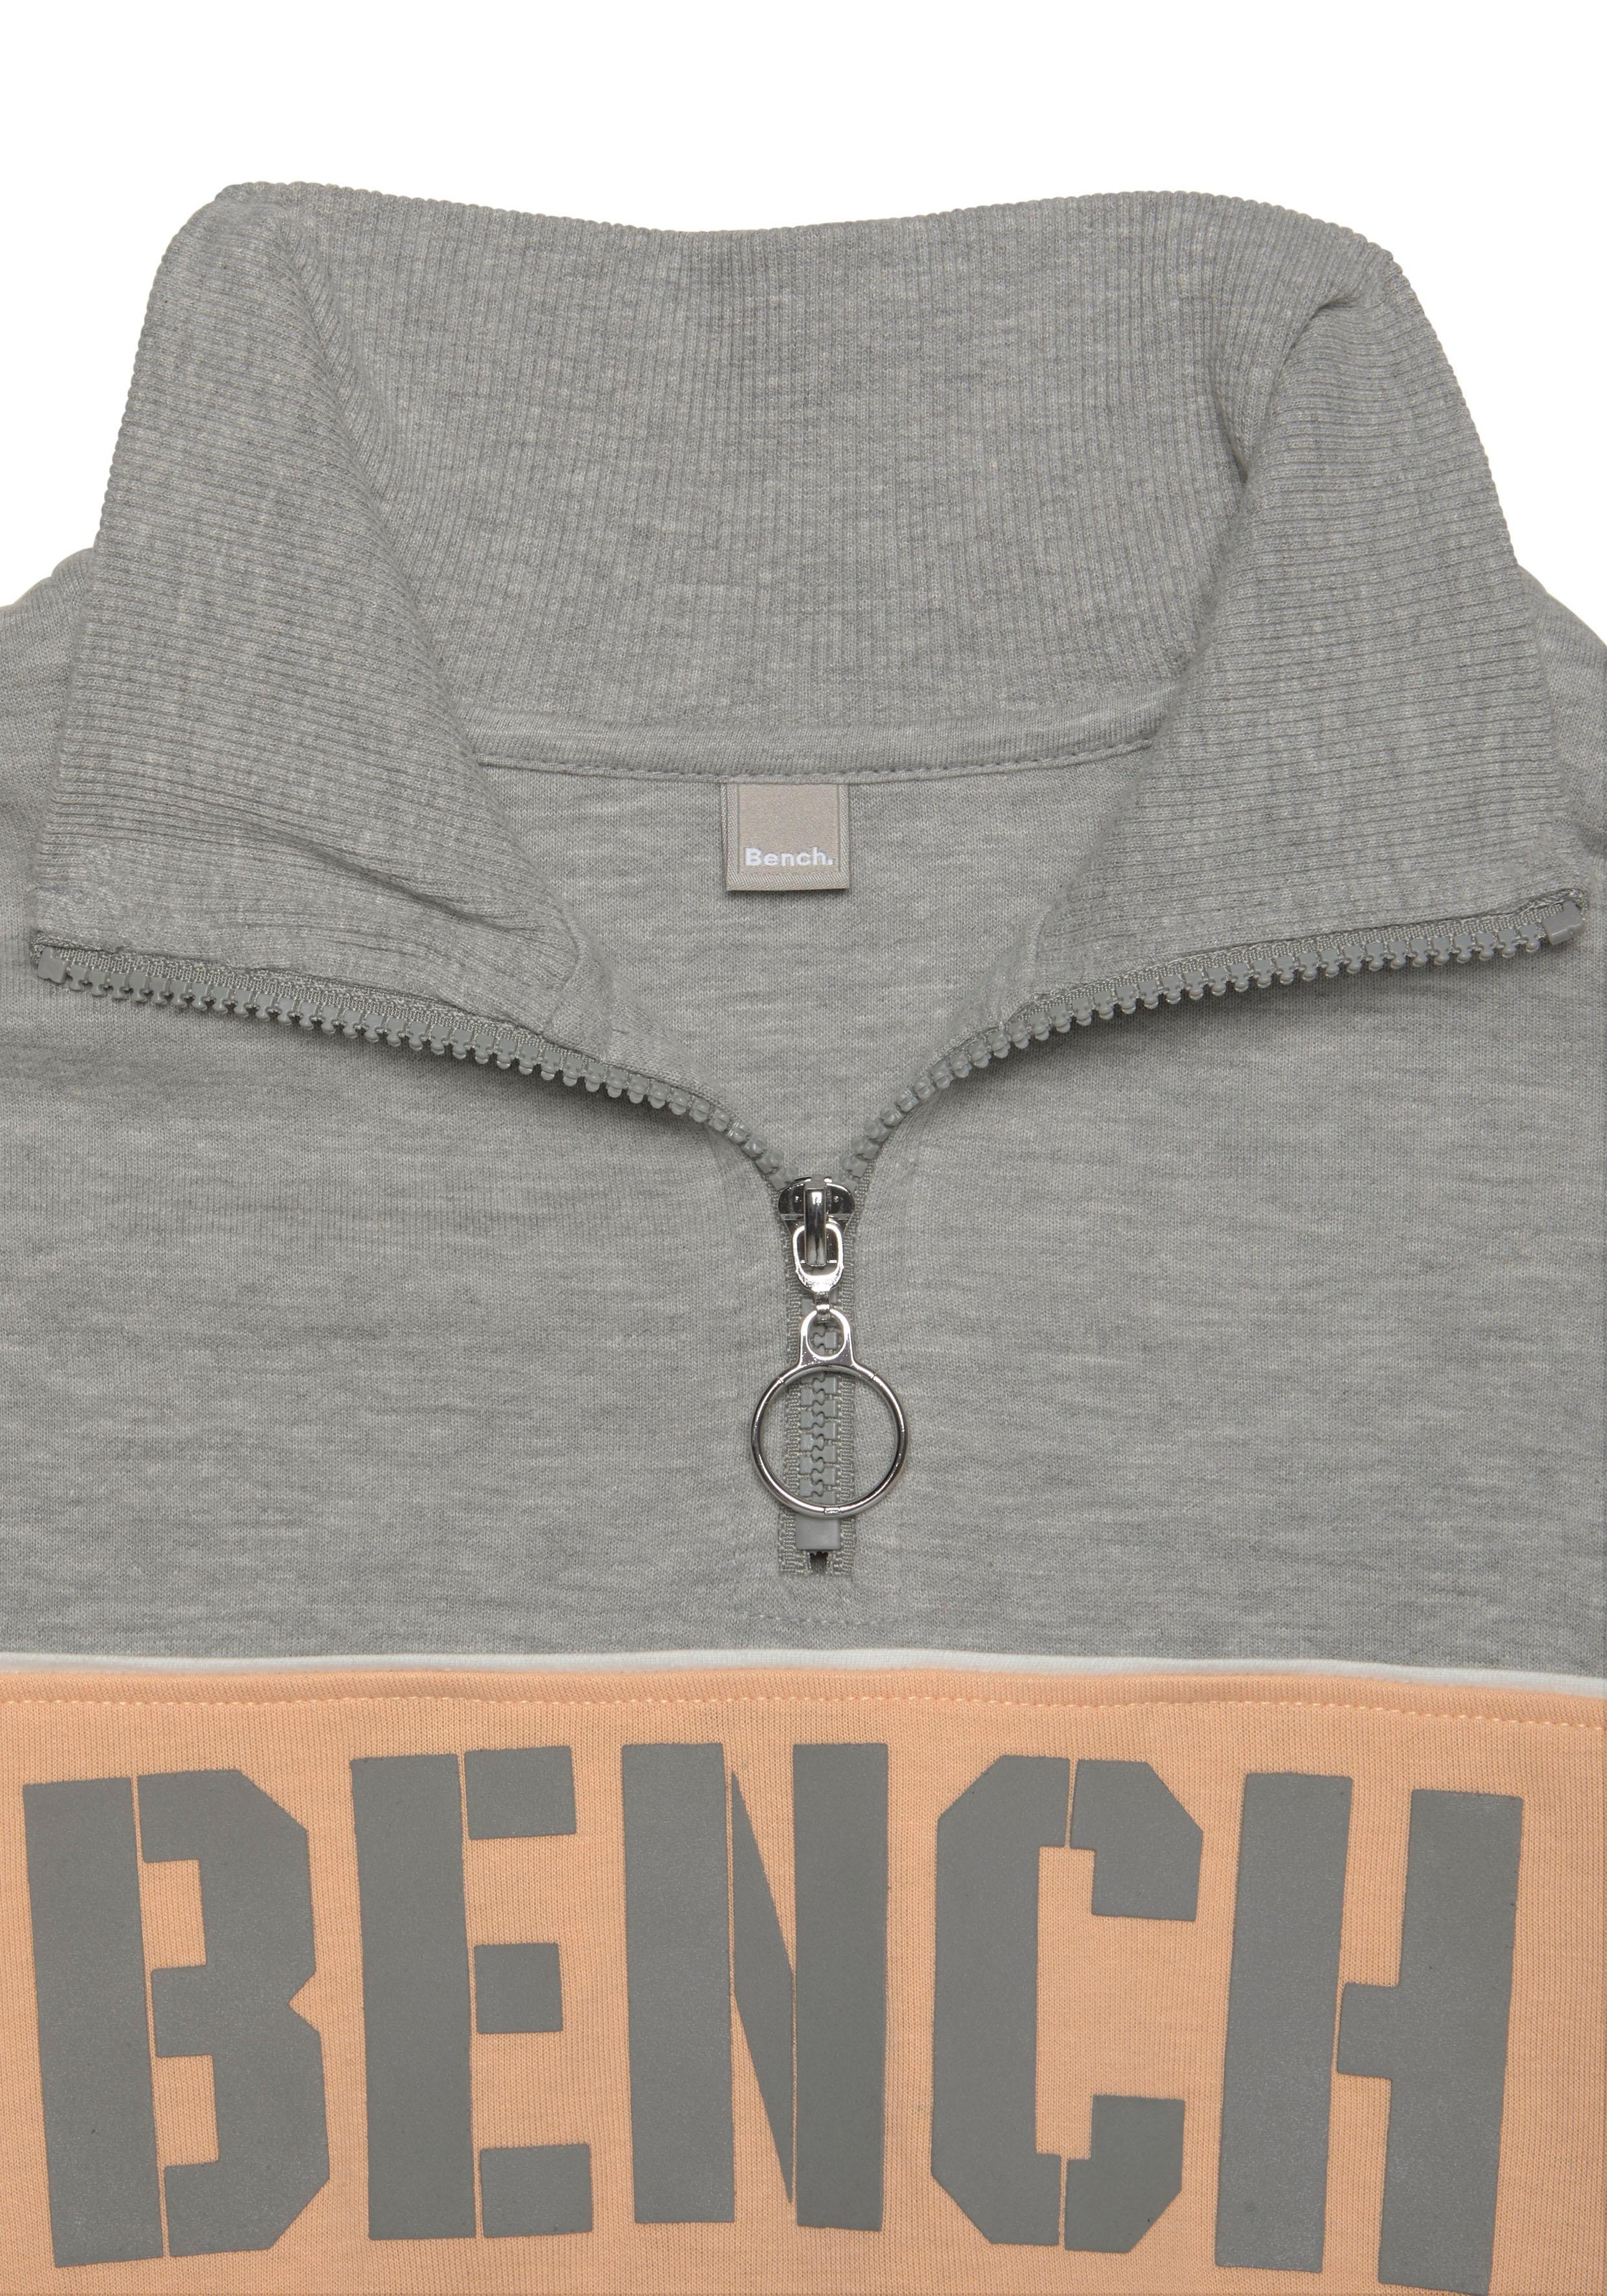 Bench. Sweatshirt, im mit Color-Blocking bei OTTO kaufen Logoprint, Loungeanzug Design